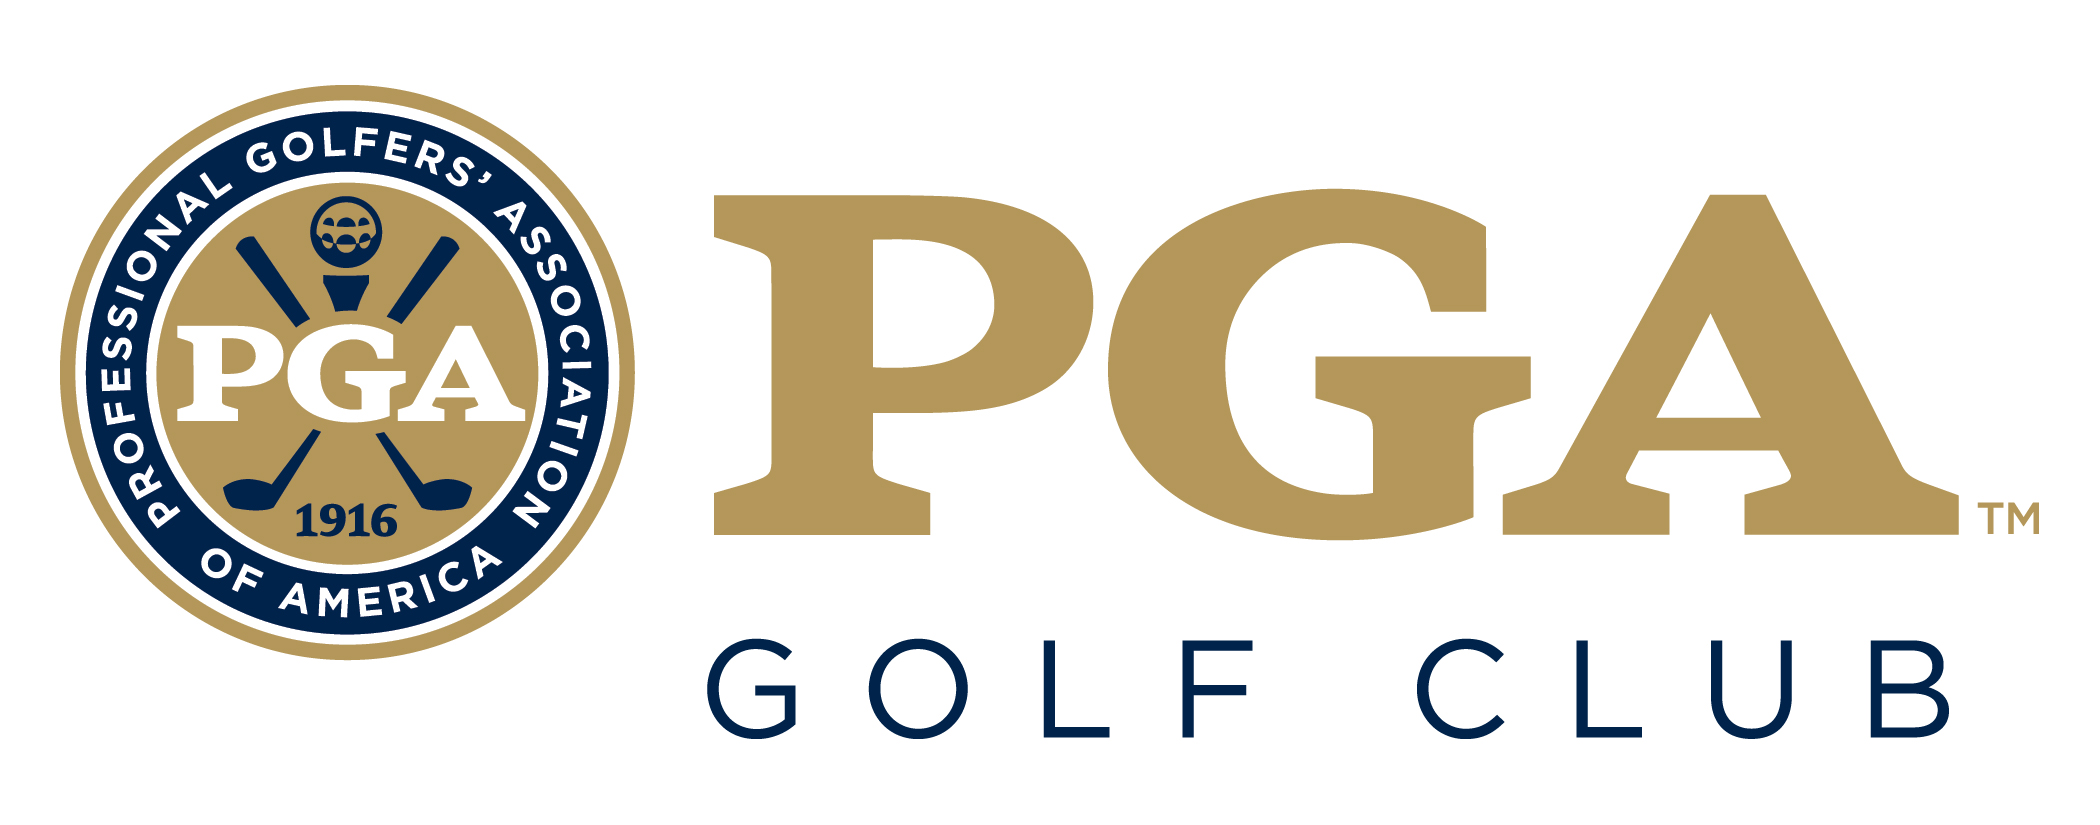 PGA Golf club logo